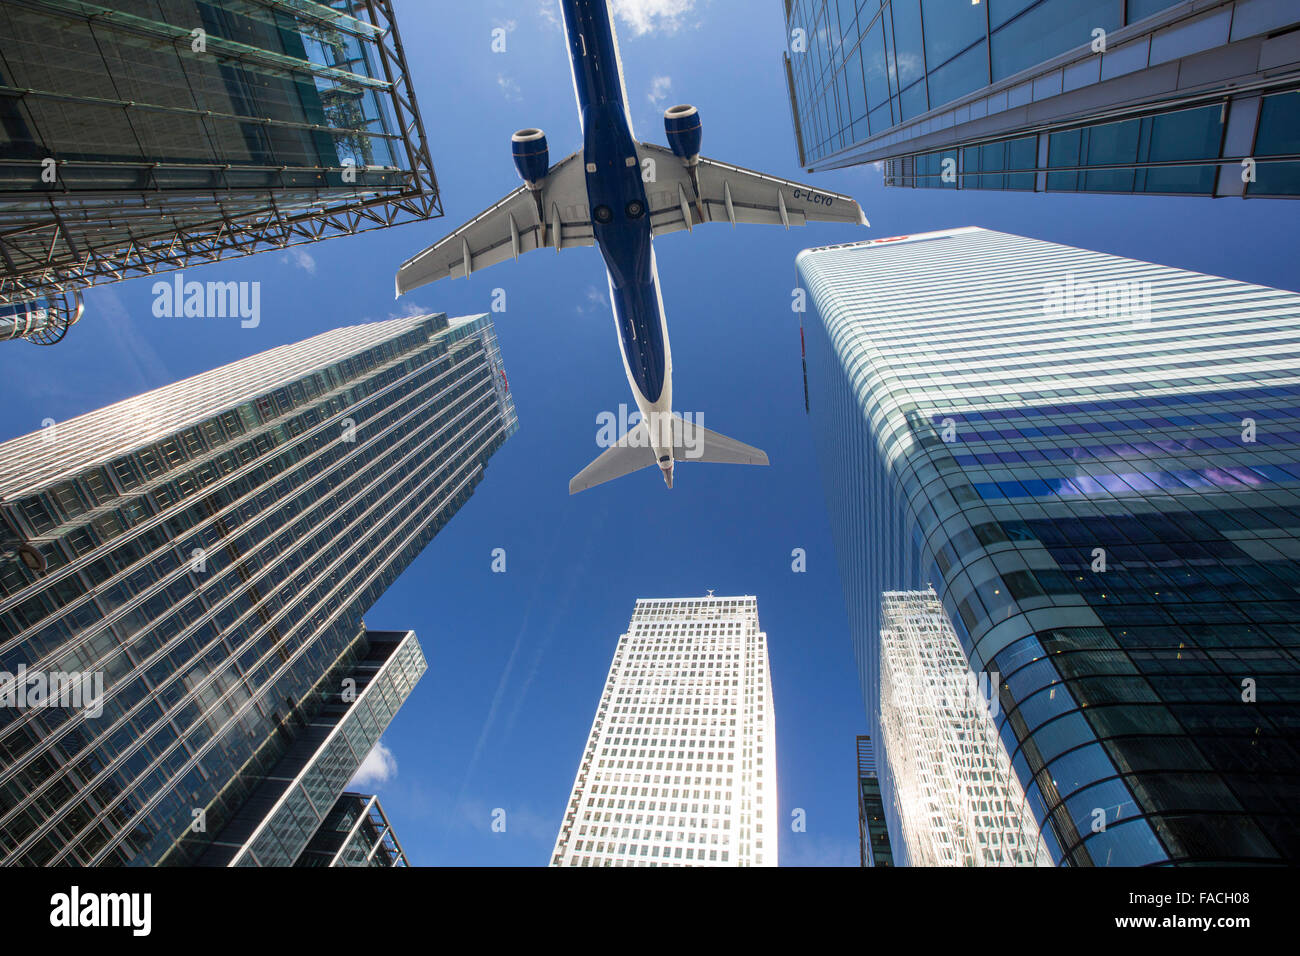 Les banques du Canary Wharf, London, UK avec un avion volant au-dessus. Banque D'Images